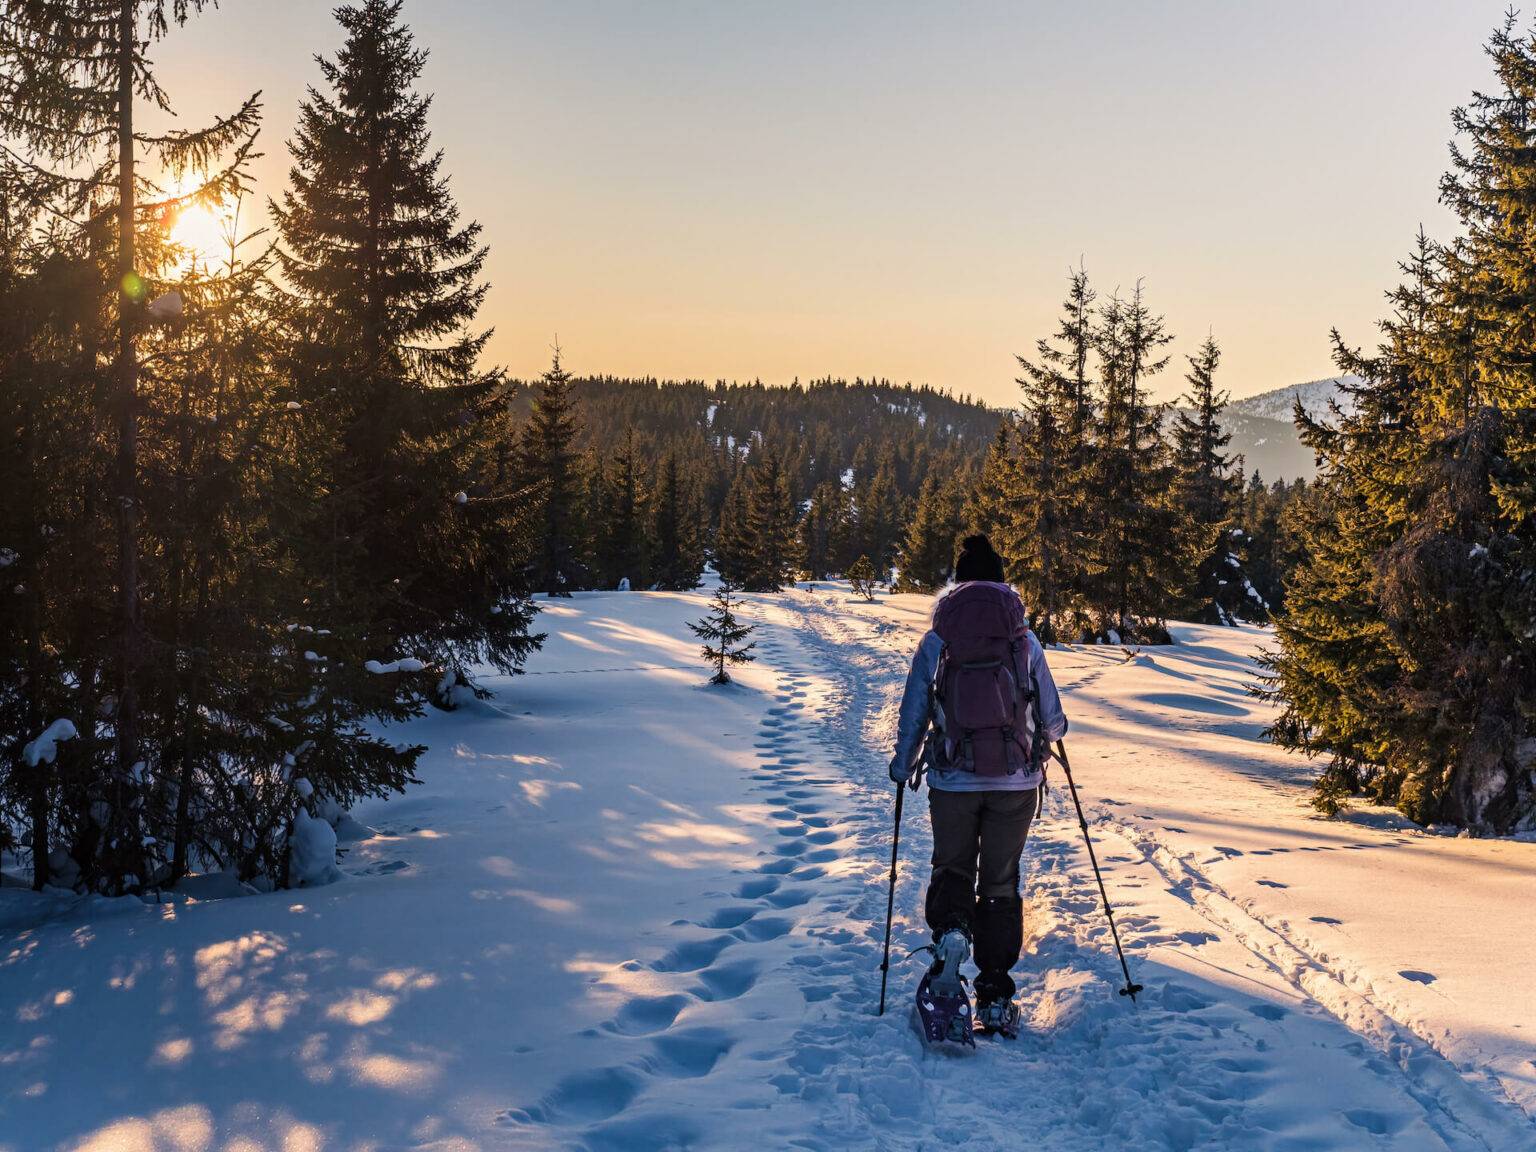 Das Soča-Tal bietet perfekte Bedingungen, um Schneeschuhwandern zu gehen.